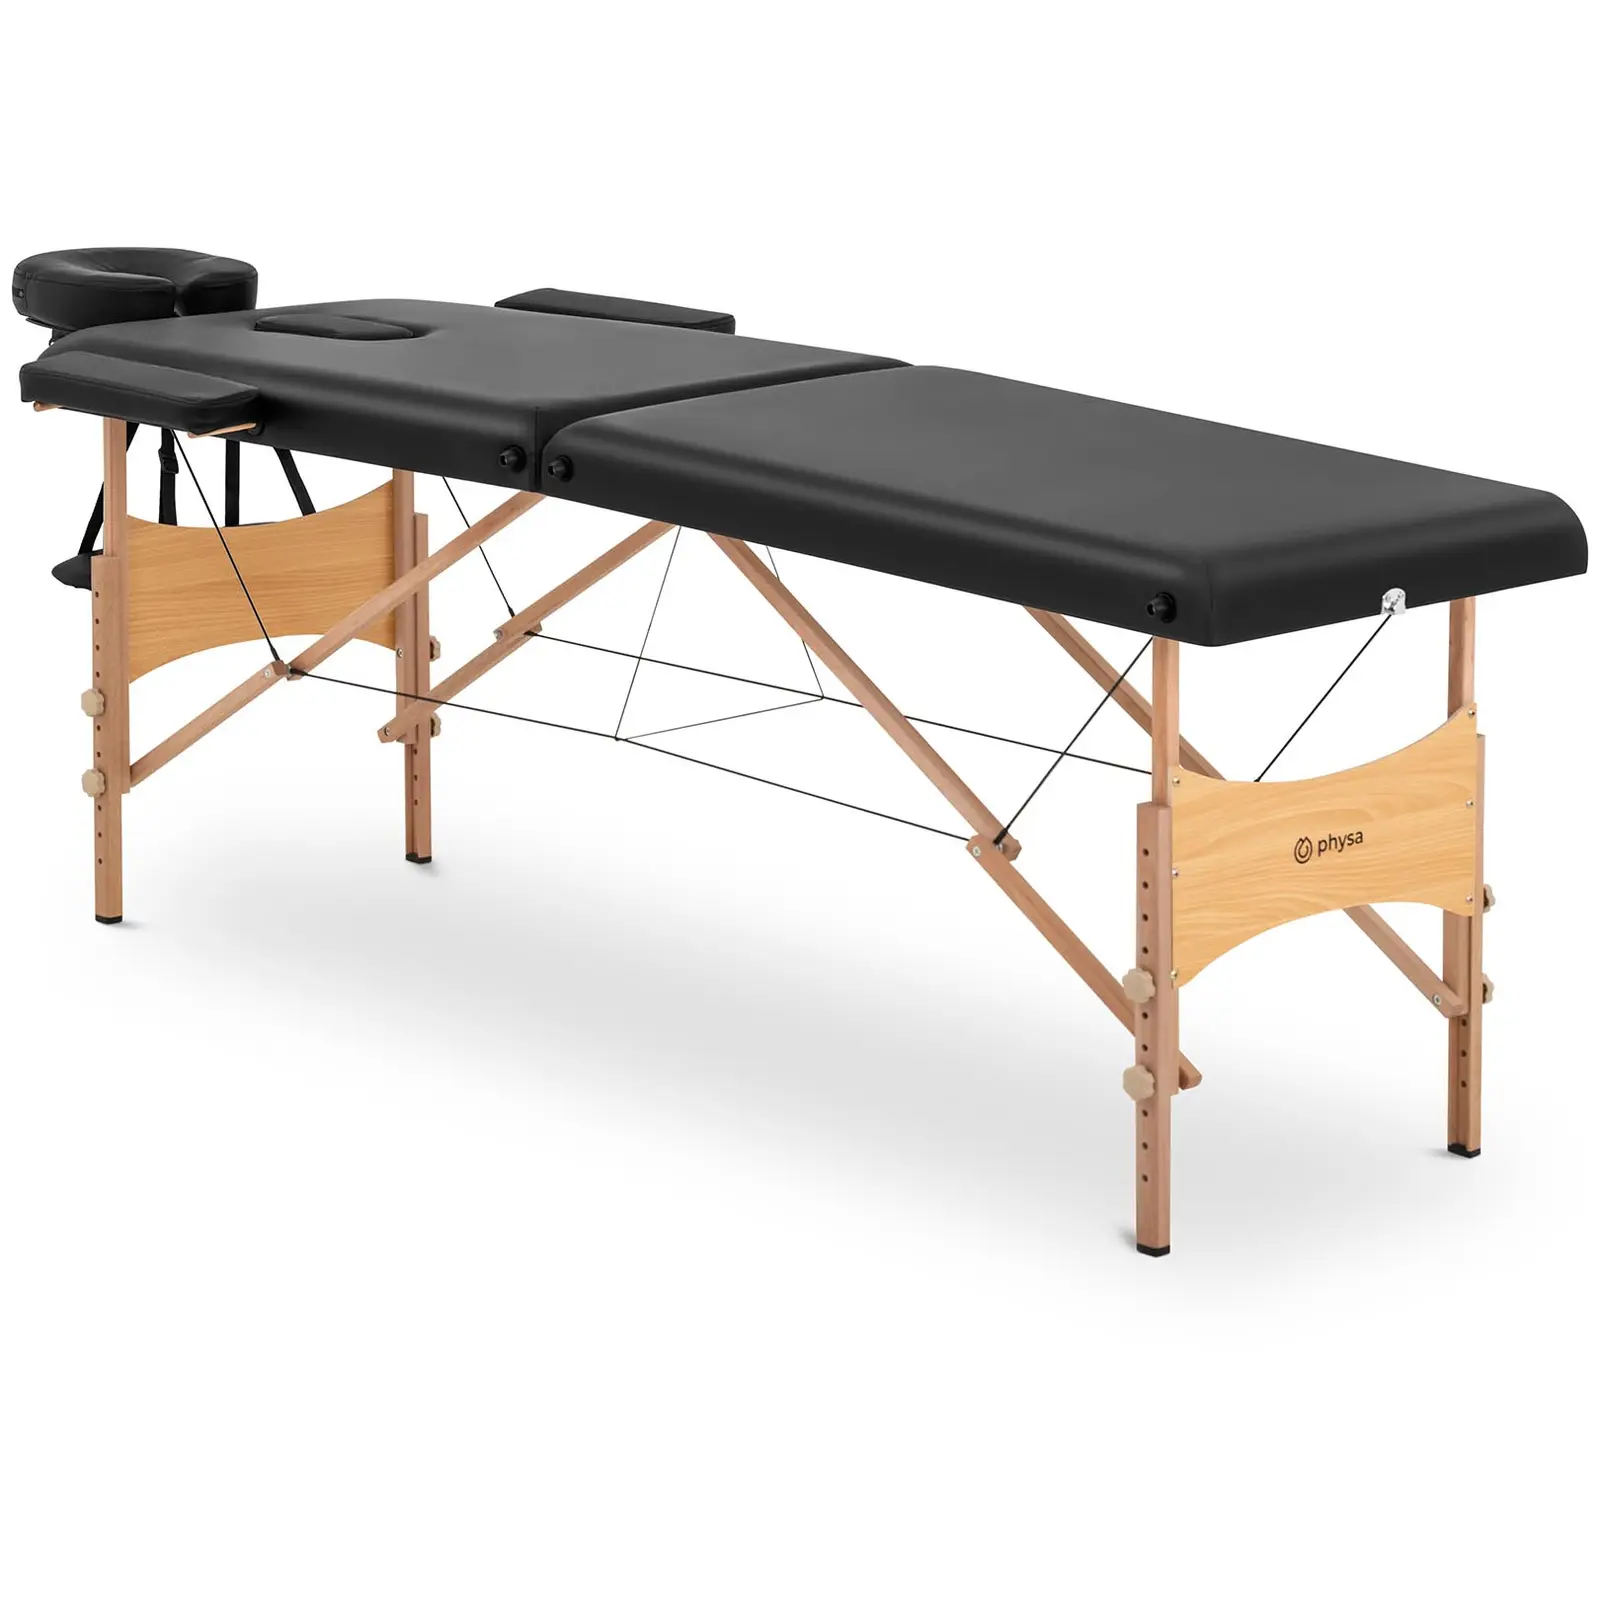 Łóżko do masażu składane - bardzo szerokie (70 cm) - odchylany zagłówek i podnóżek - drewno bukowe - czarne